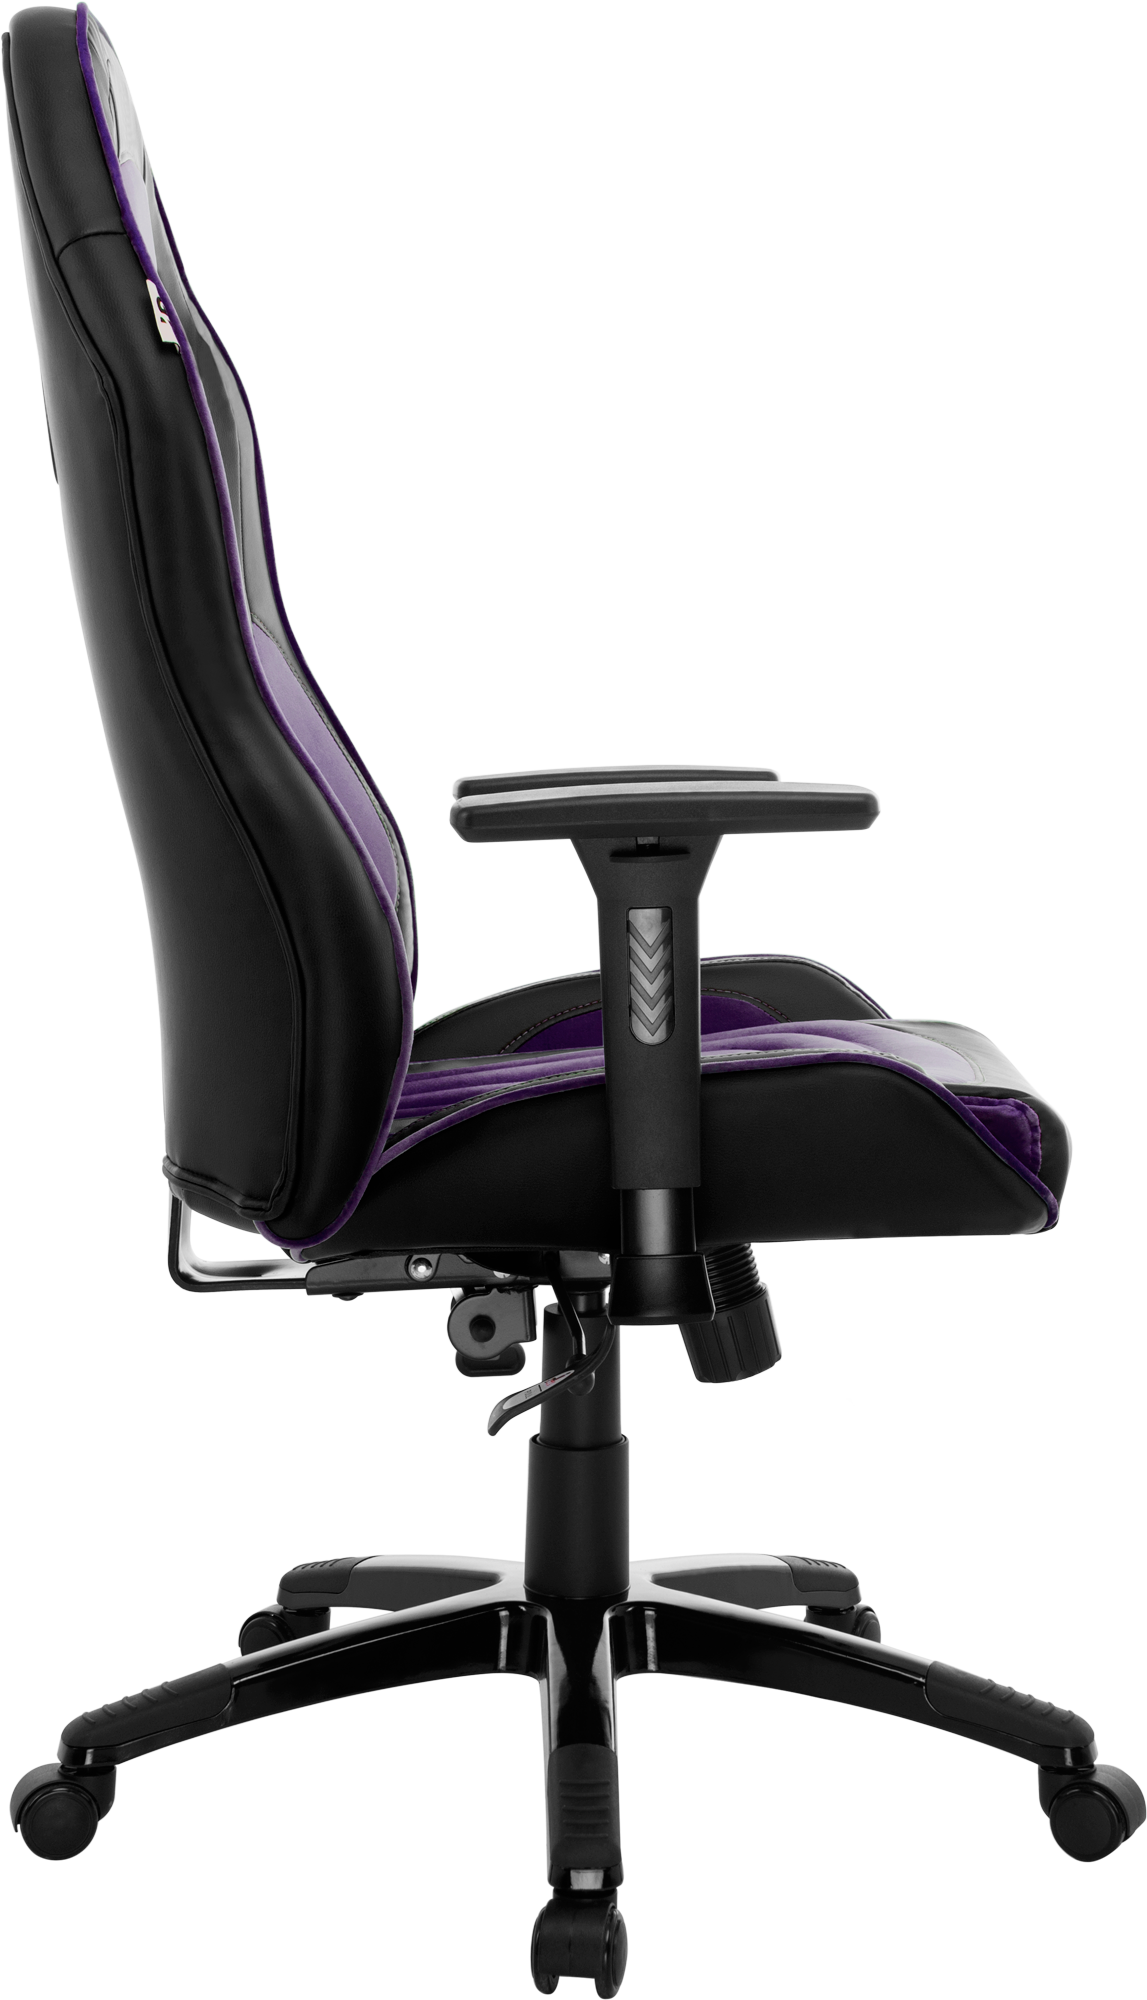 Геймерське крісло GT Racer чорне з фіолетовим (X-2645 Black/Violet) - фото 3